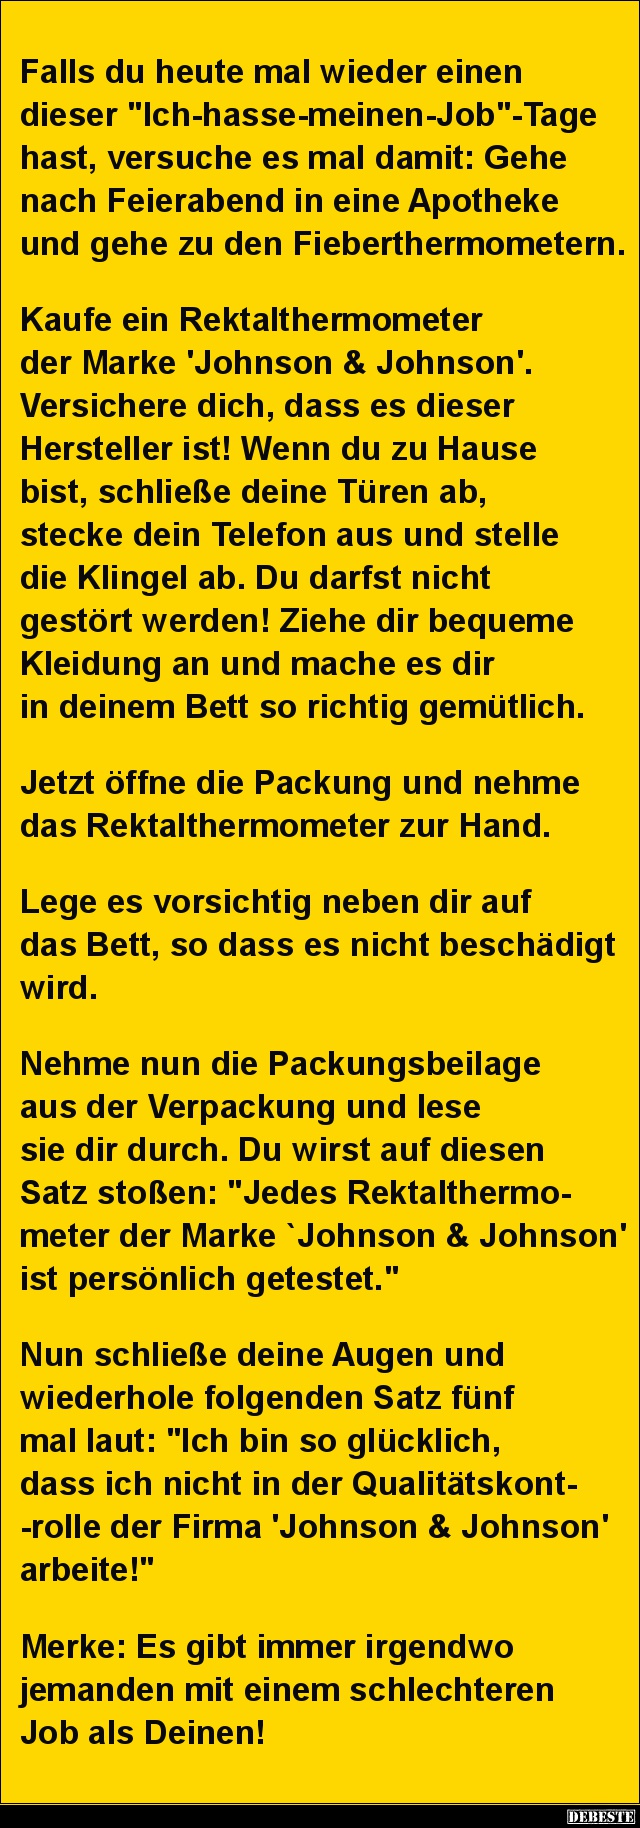 Falls du heute mal wieder einen dieser "Ich-hasse-meinen-Job".. - Lustige Bilder | DEBESTE.de